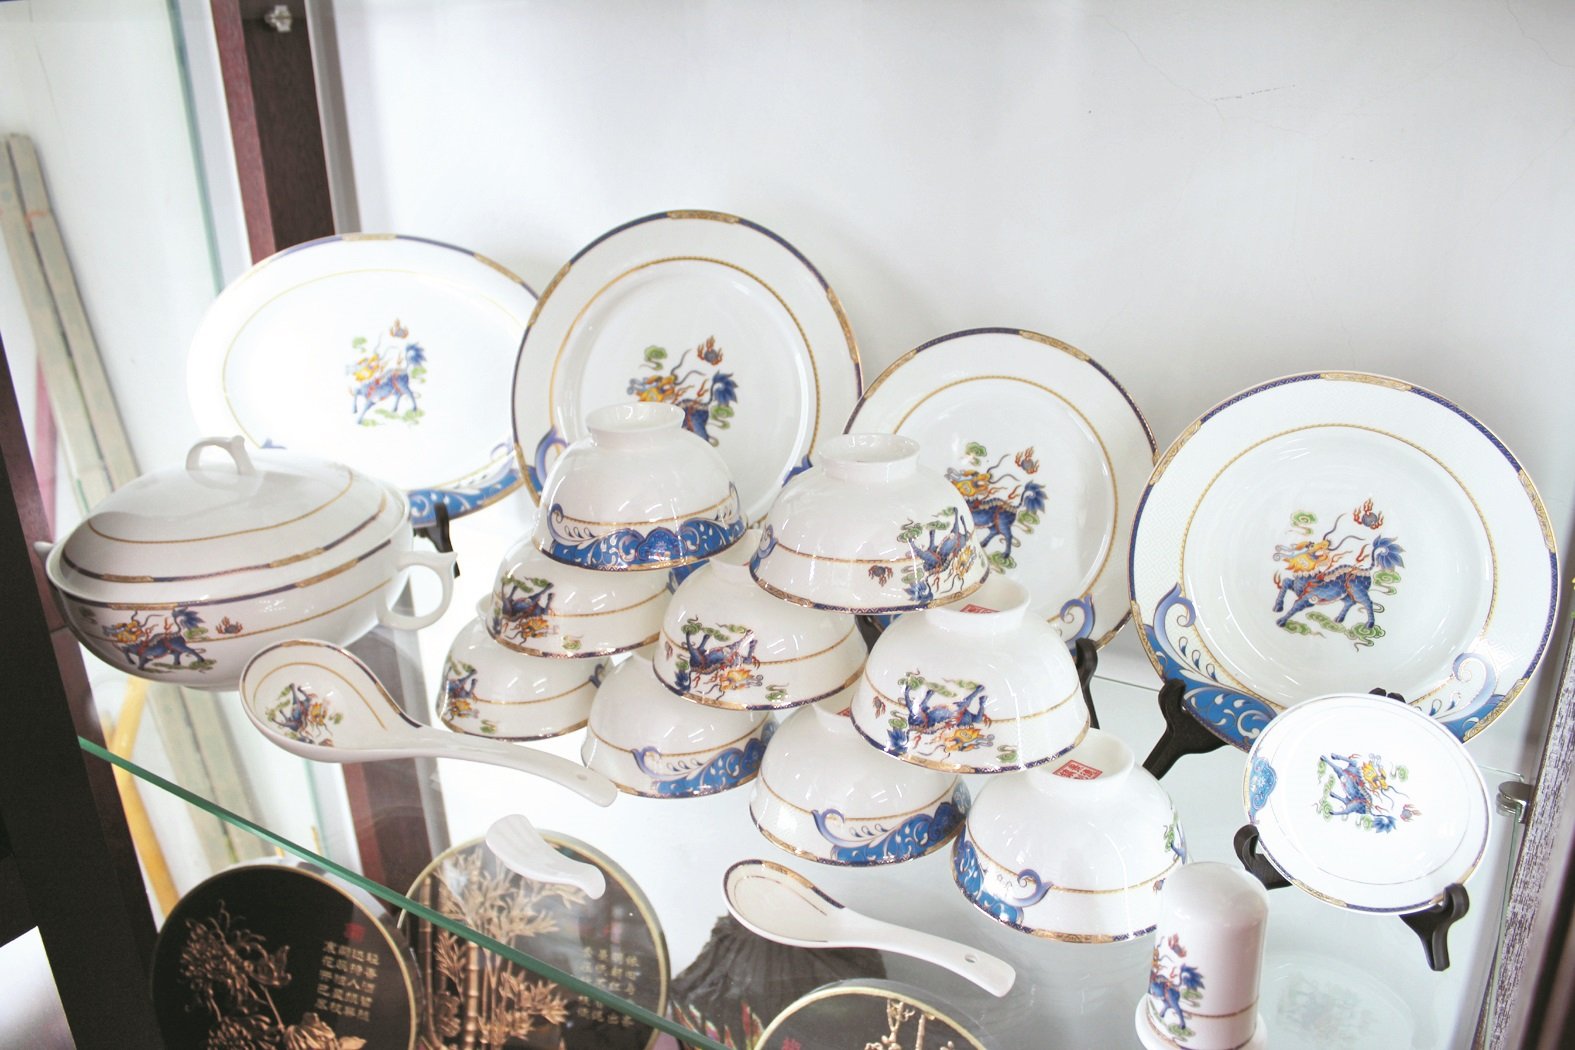 陶瓷产品如碗碟及杯子是人们生活中不可或缺的用具，惟消费者必须谨慎选购，才不会买到重金属超标的产品，误了家人的健康。